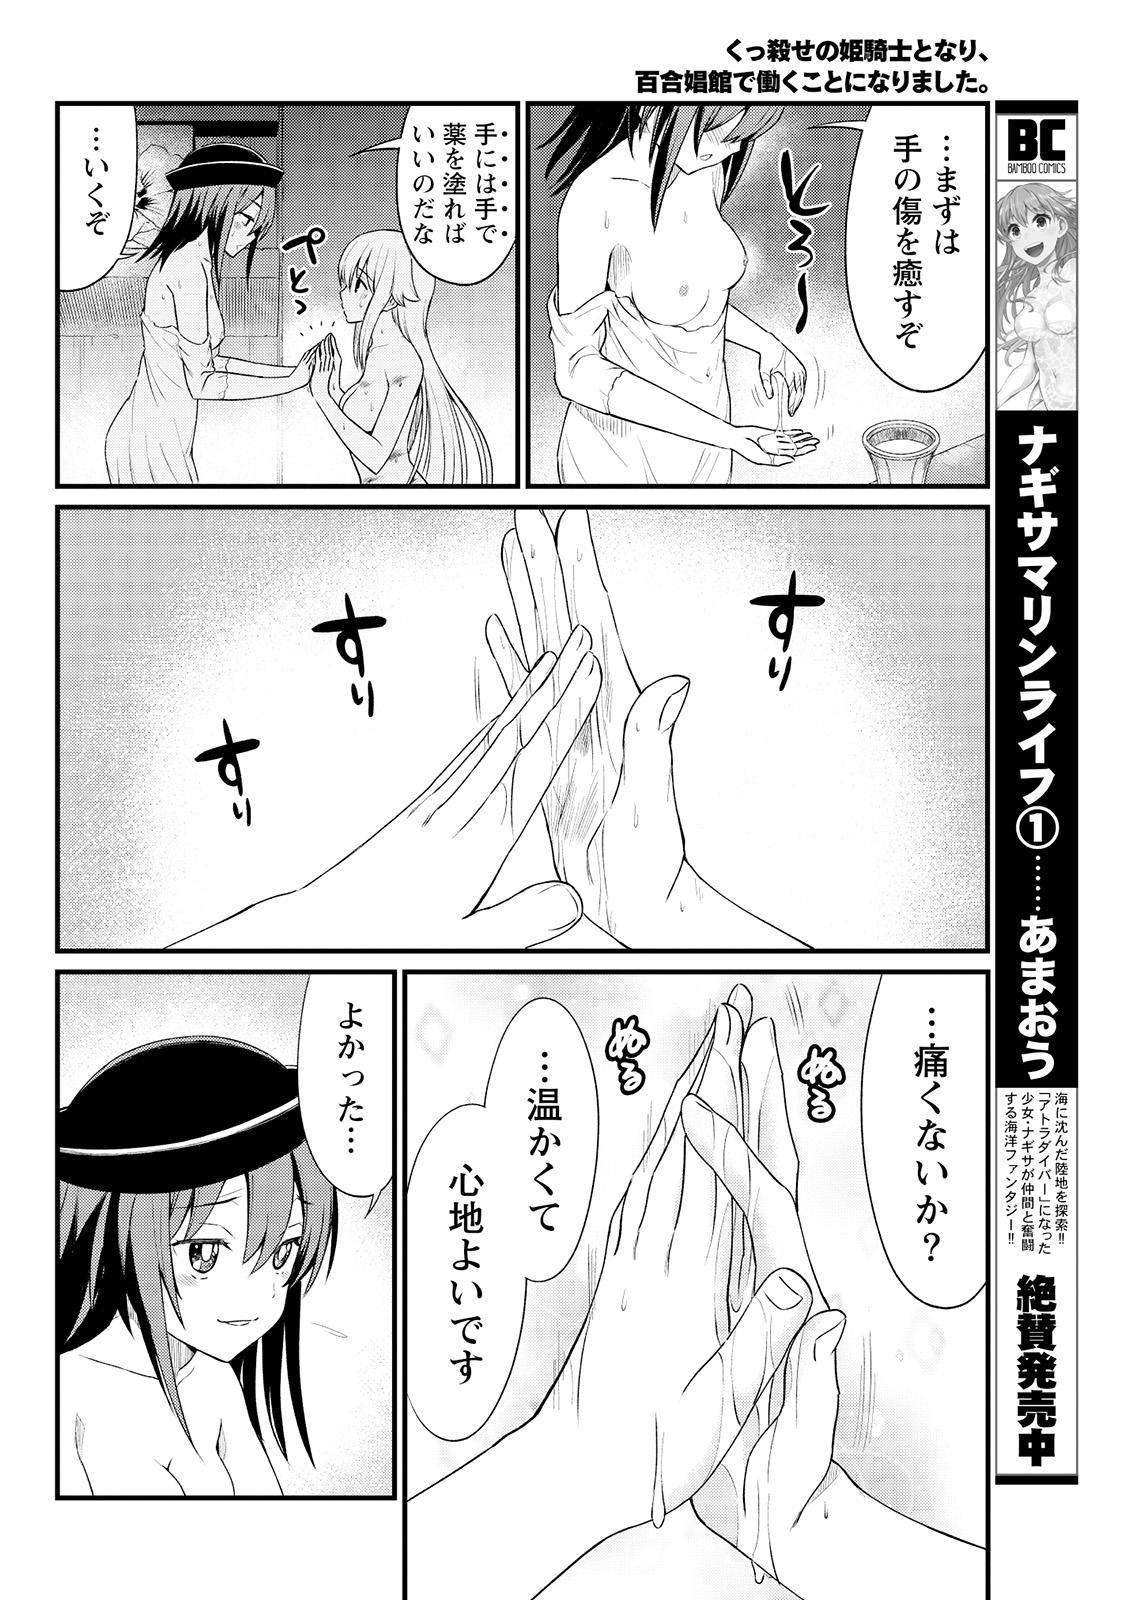 Gostosa Kukkorose no Himekishi to nari, Yuri Shoukan de Hataraku koto ni Narimashita. 6 Made - Page 12